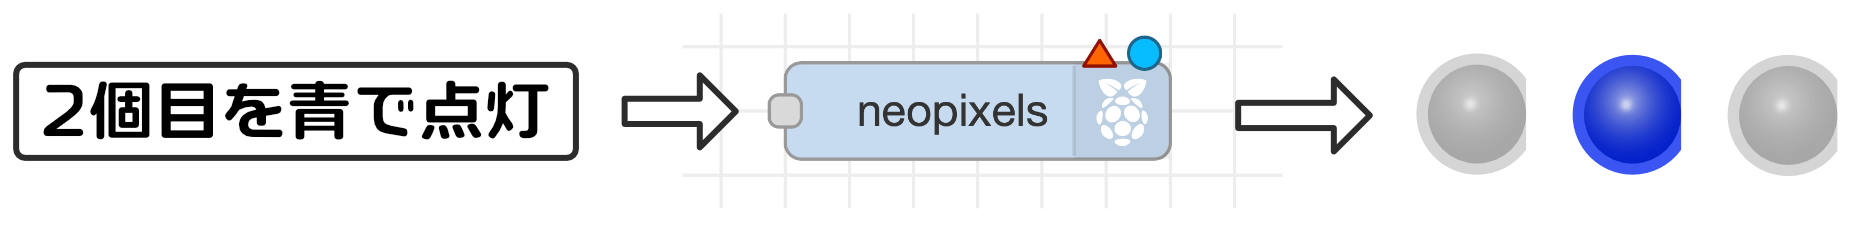 NeoPixelノード機能4